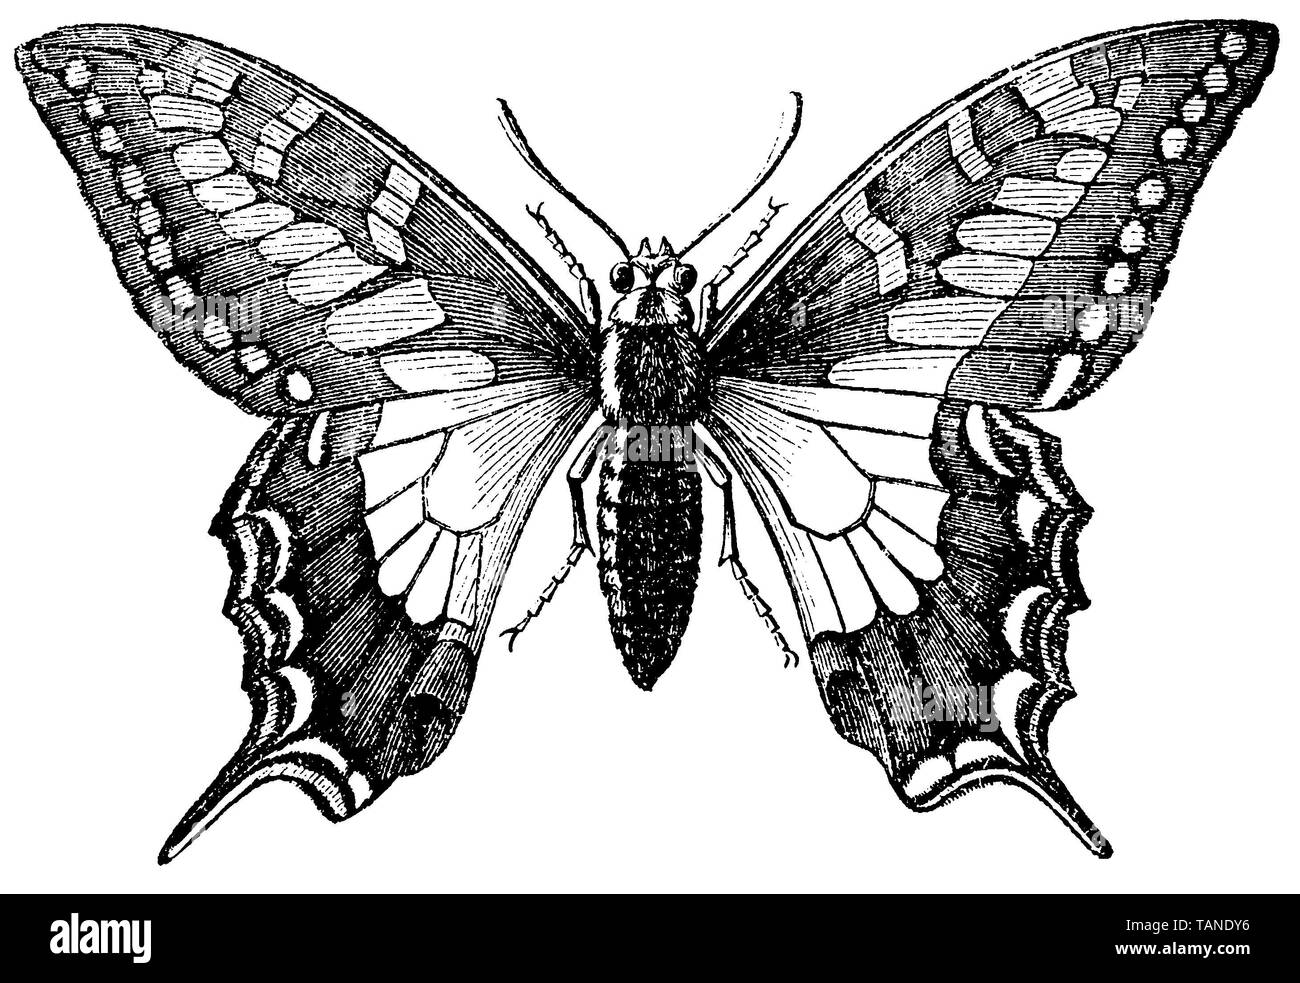 Ancien Monde, swallowtail Papilio machaon, anonym (livre de biologie, 1898) Banque D'Images